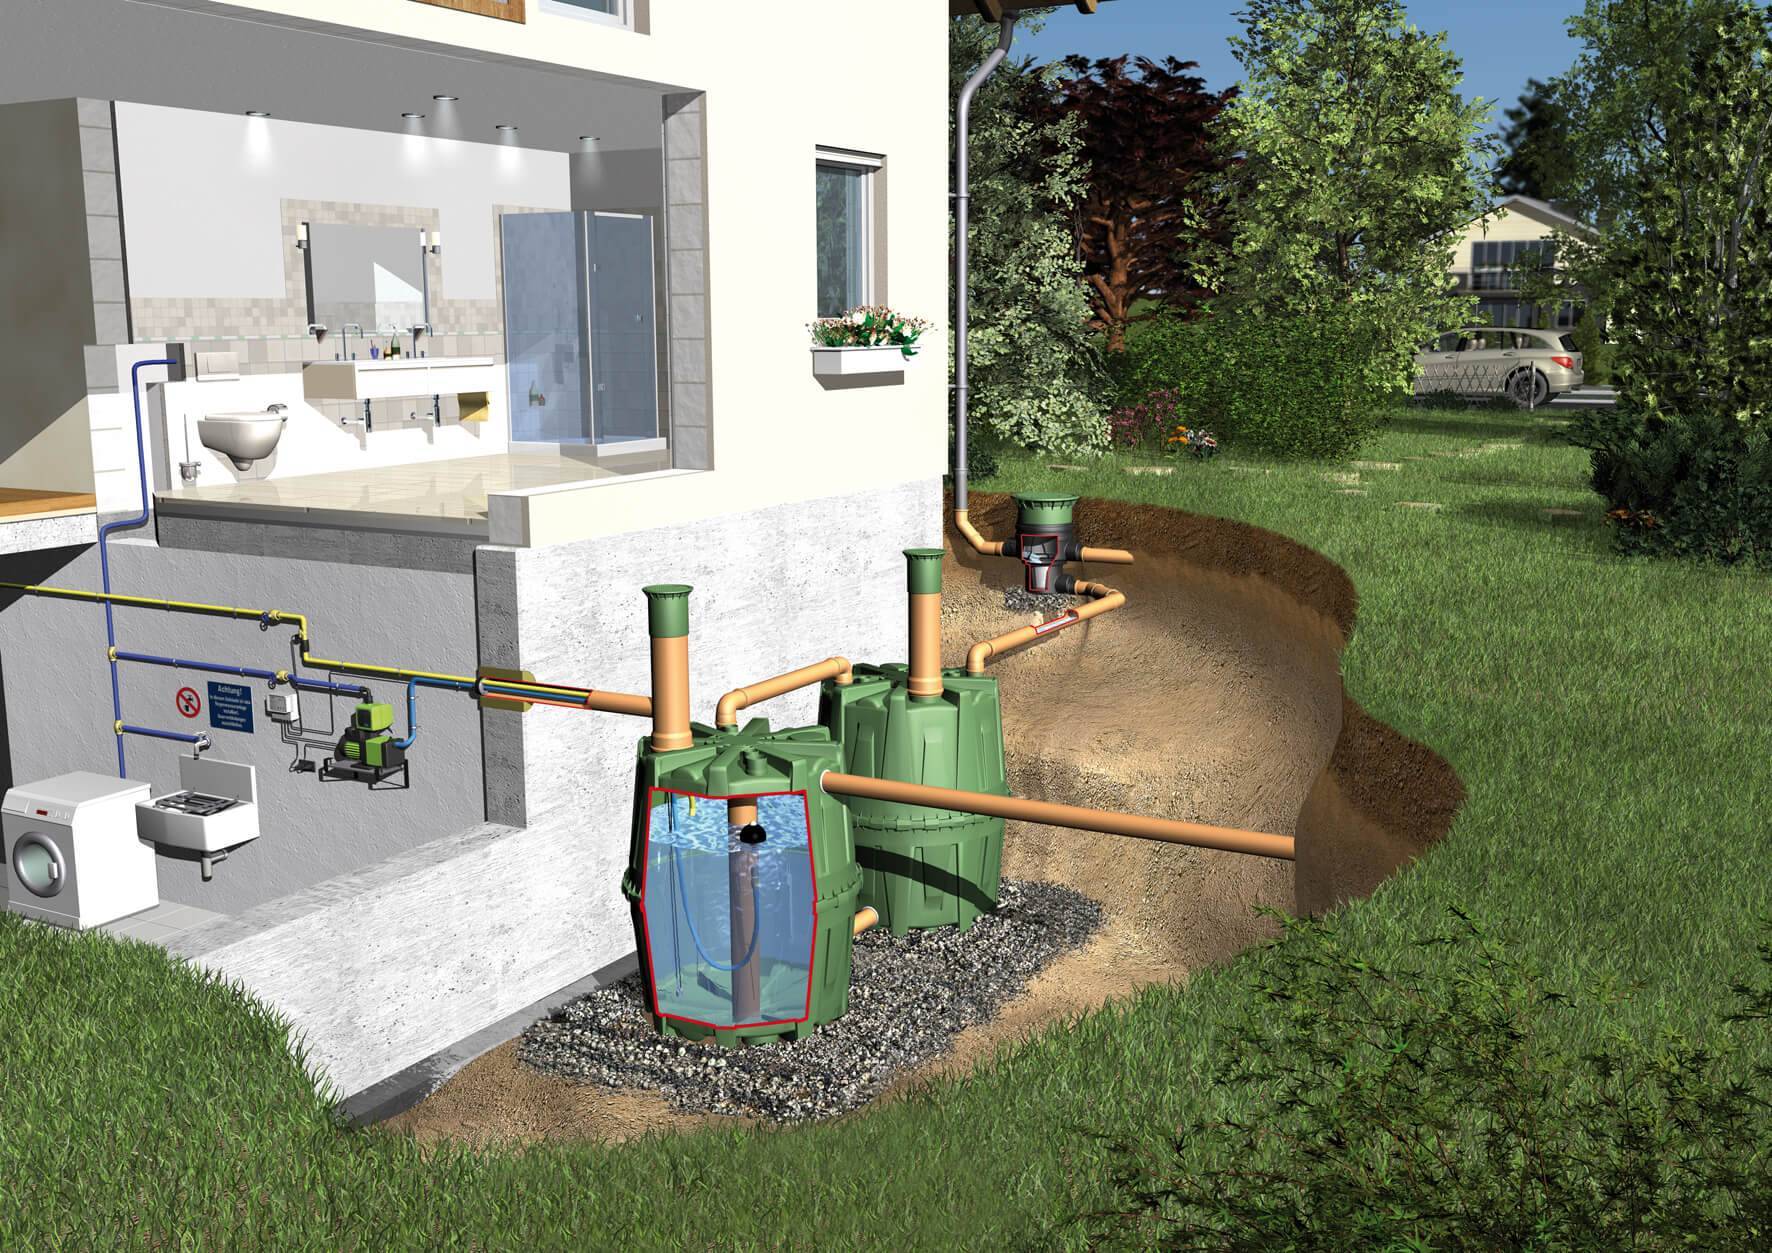 Выбираем автономную канализацию для дома: виды систем и особенности их эксплуатации / устройство канализации / системы канализации / публикации / санитарно-технические работы